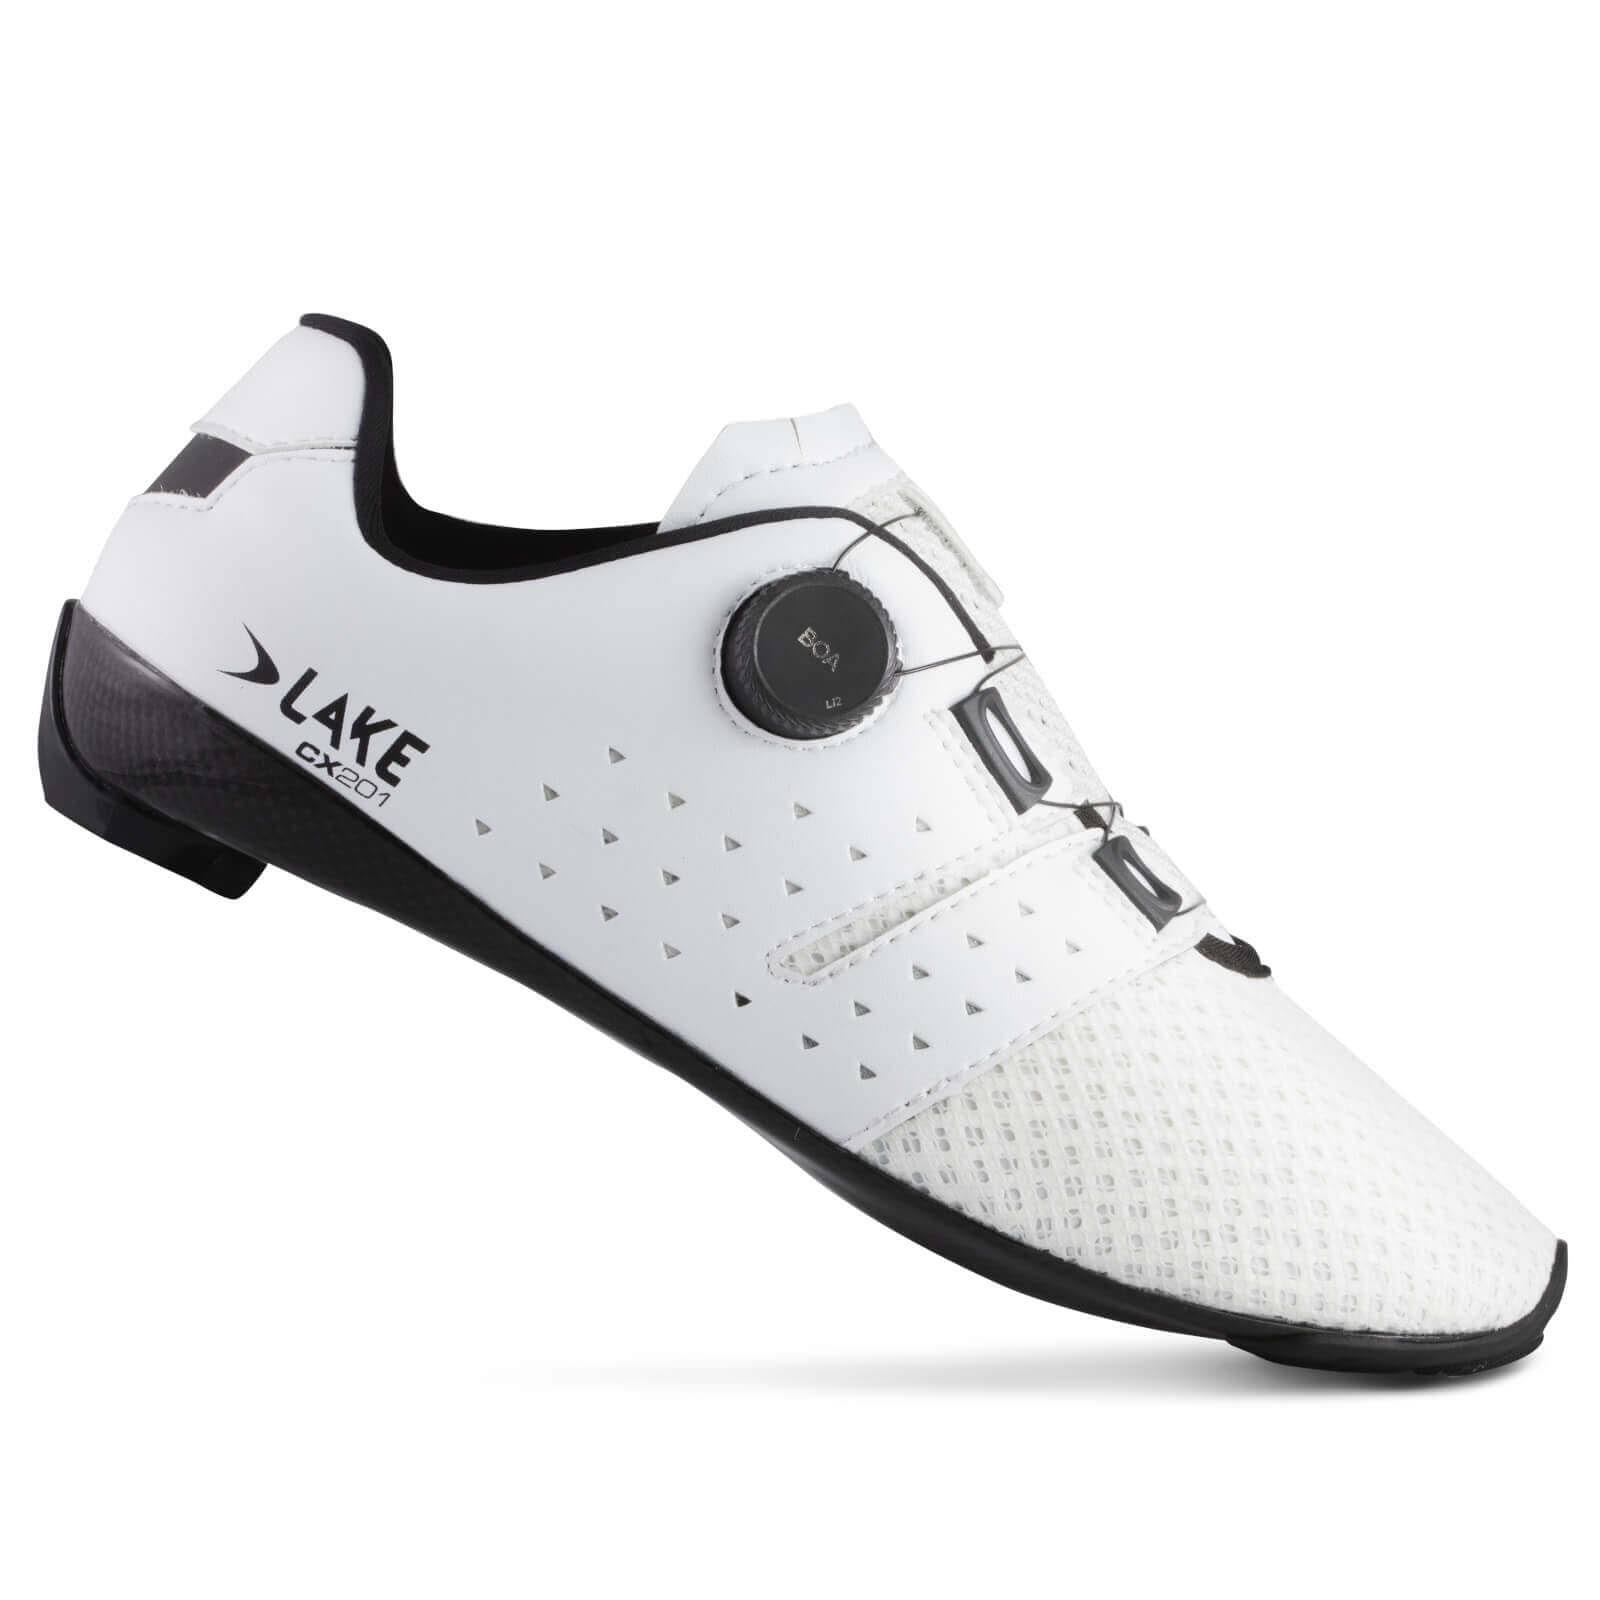 Lake CX201 Road Shoes - EU 41 - White